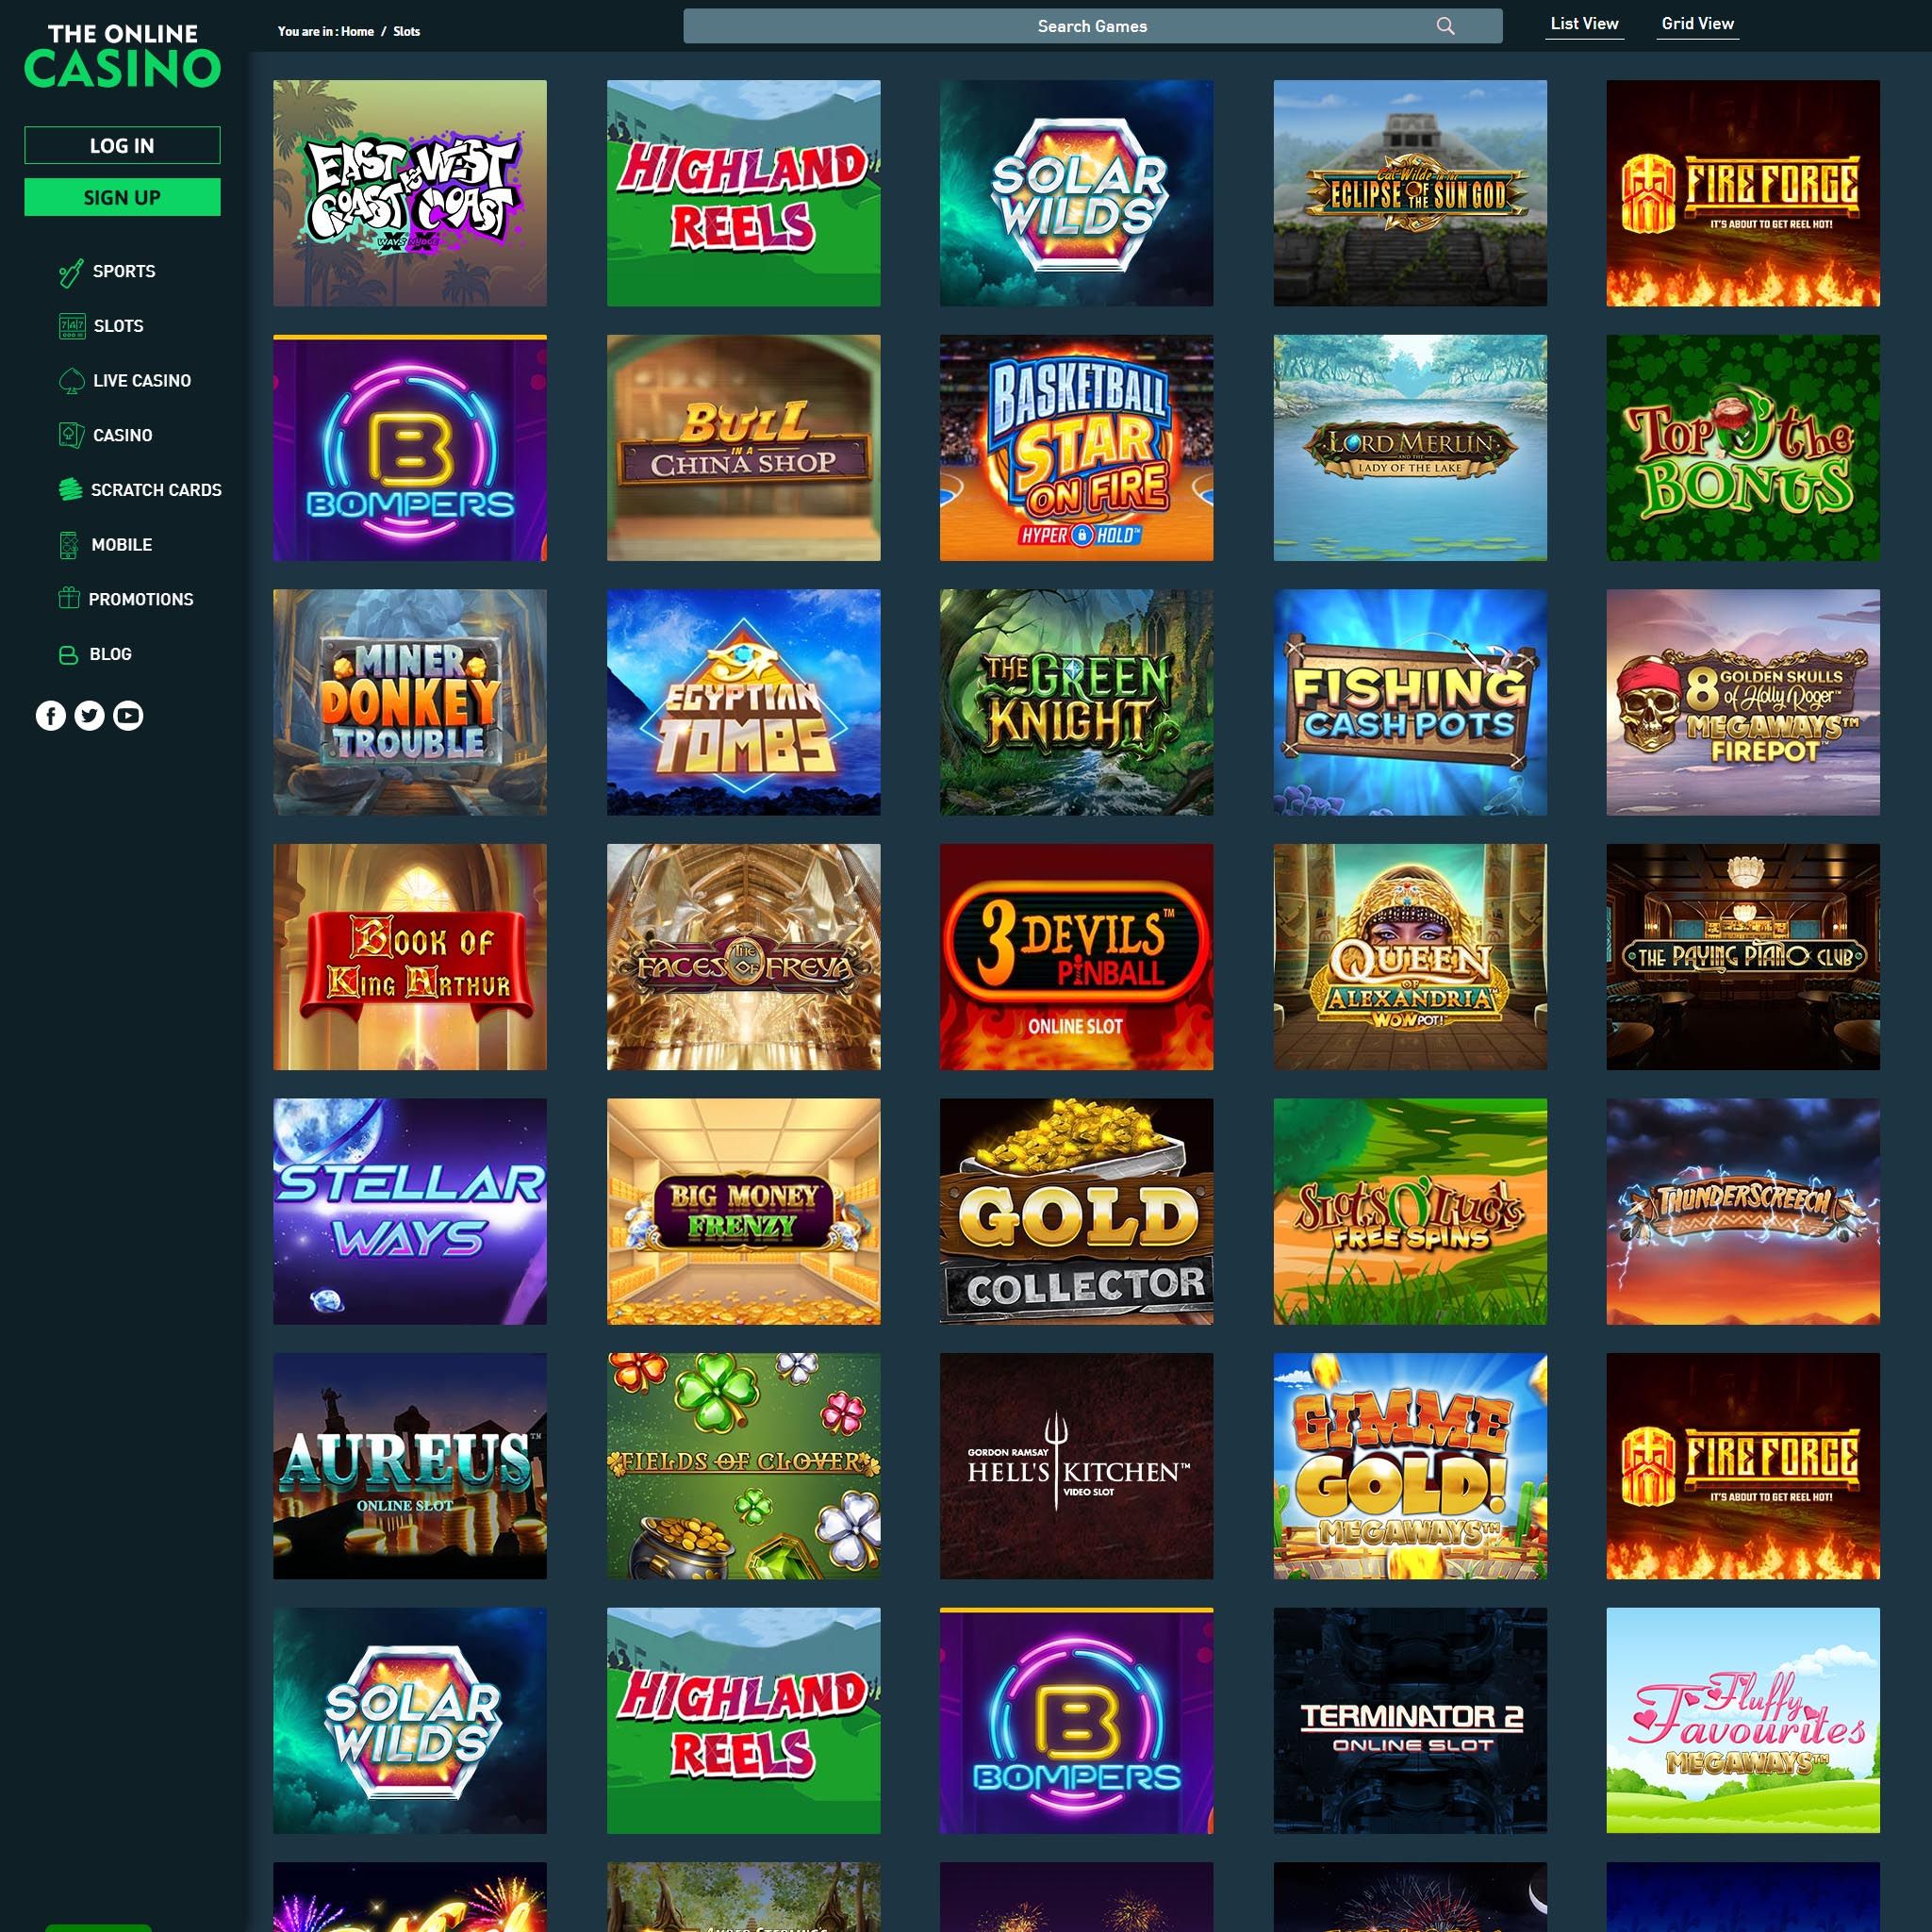 Pelaa netticasino The Online Casino voittaaksesi oikeaa rahaa – oikean rahan online casino! Vertaa kaikki nettikasinot ja löydä parhaat casinot Suomessa.